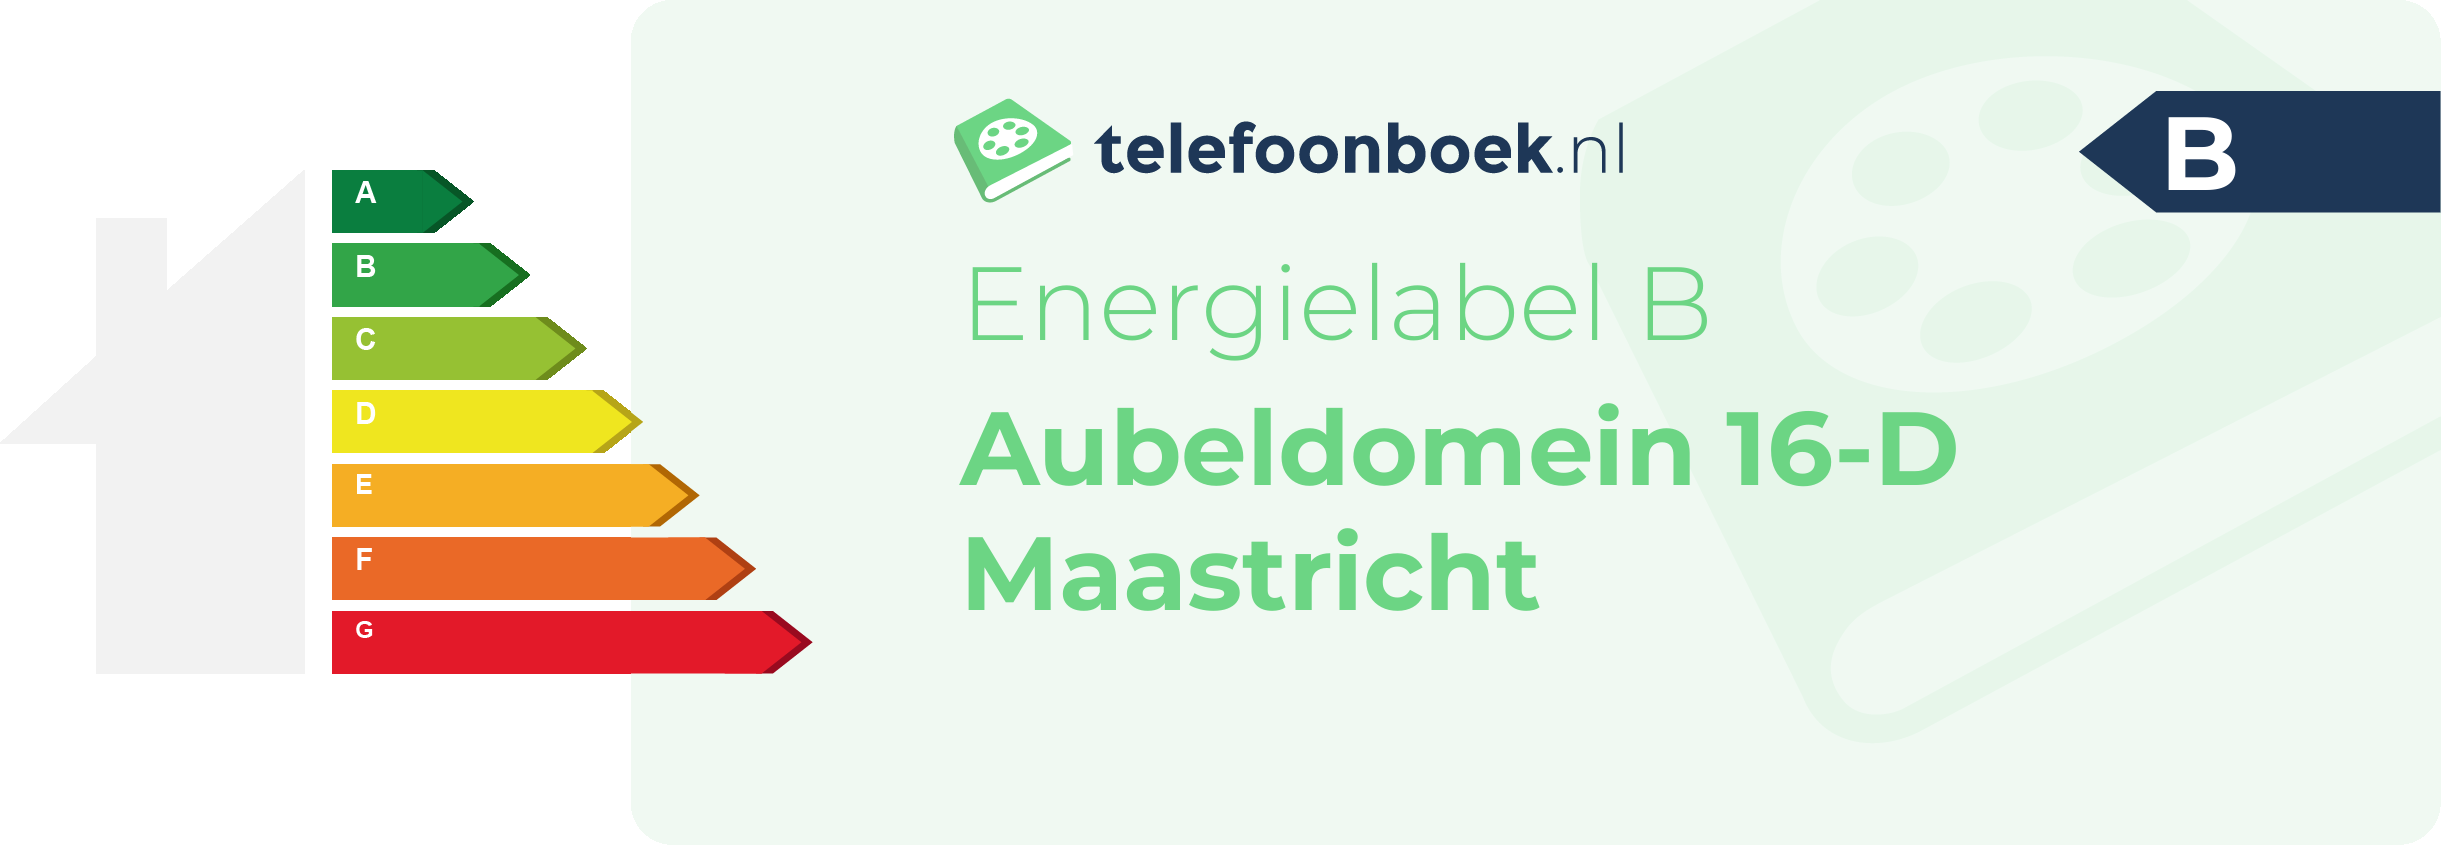 Energielabel Aubeldomein 16-D Maastricht